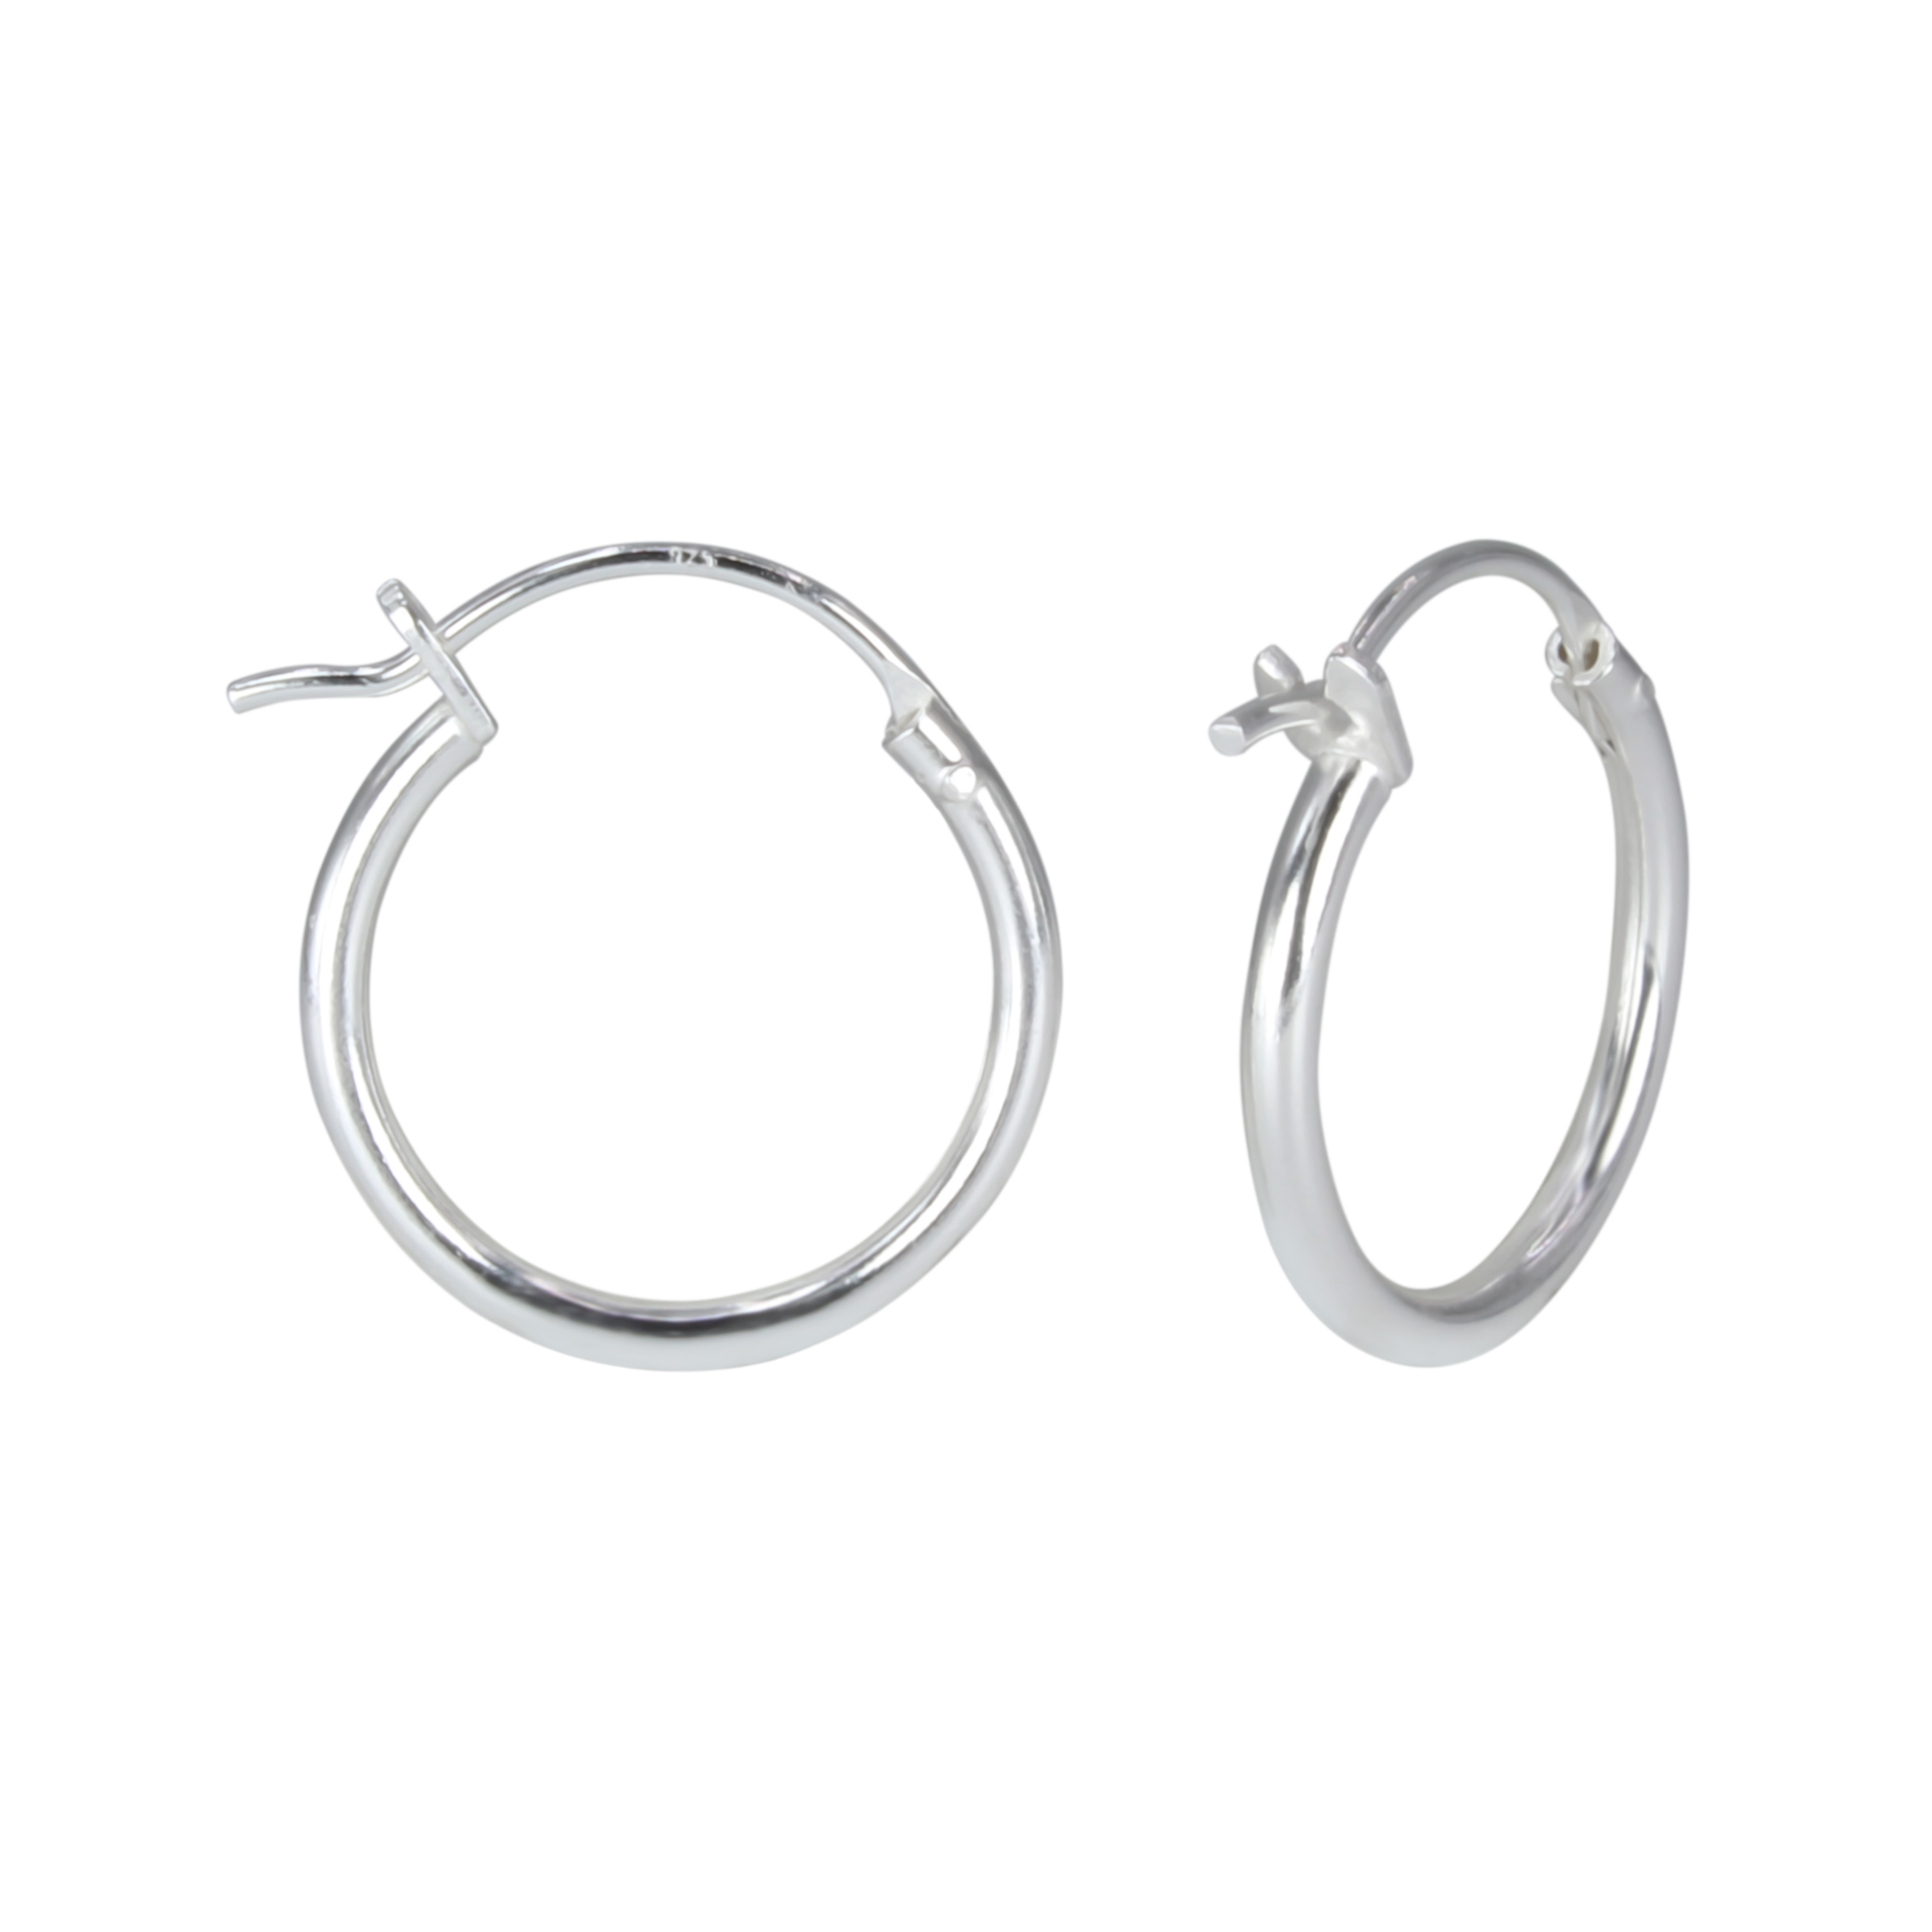 16mm Silver French Lock Hoop Earrings - 925 Silver Jewelry